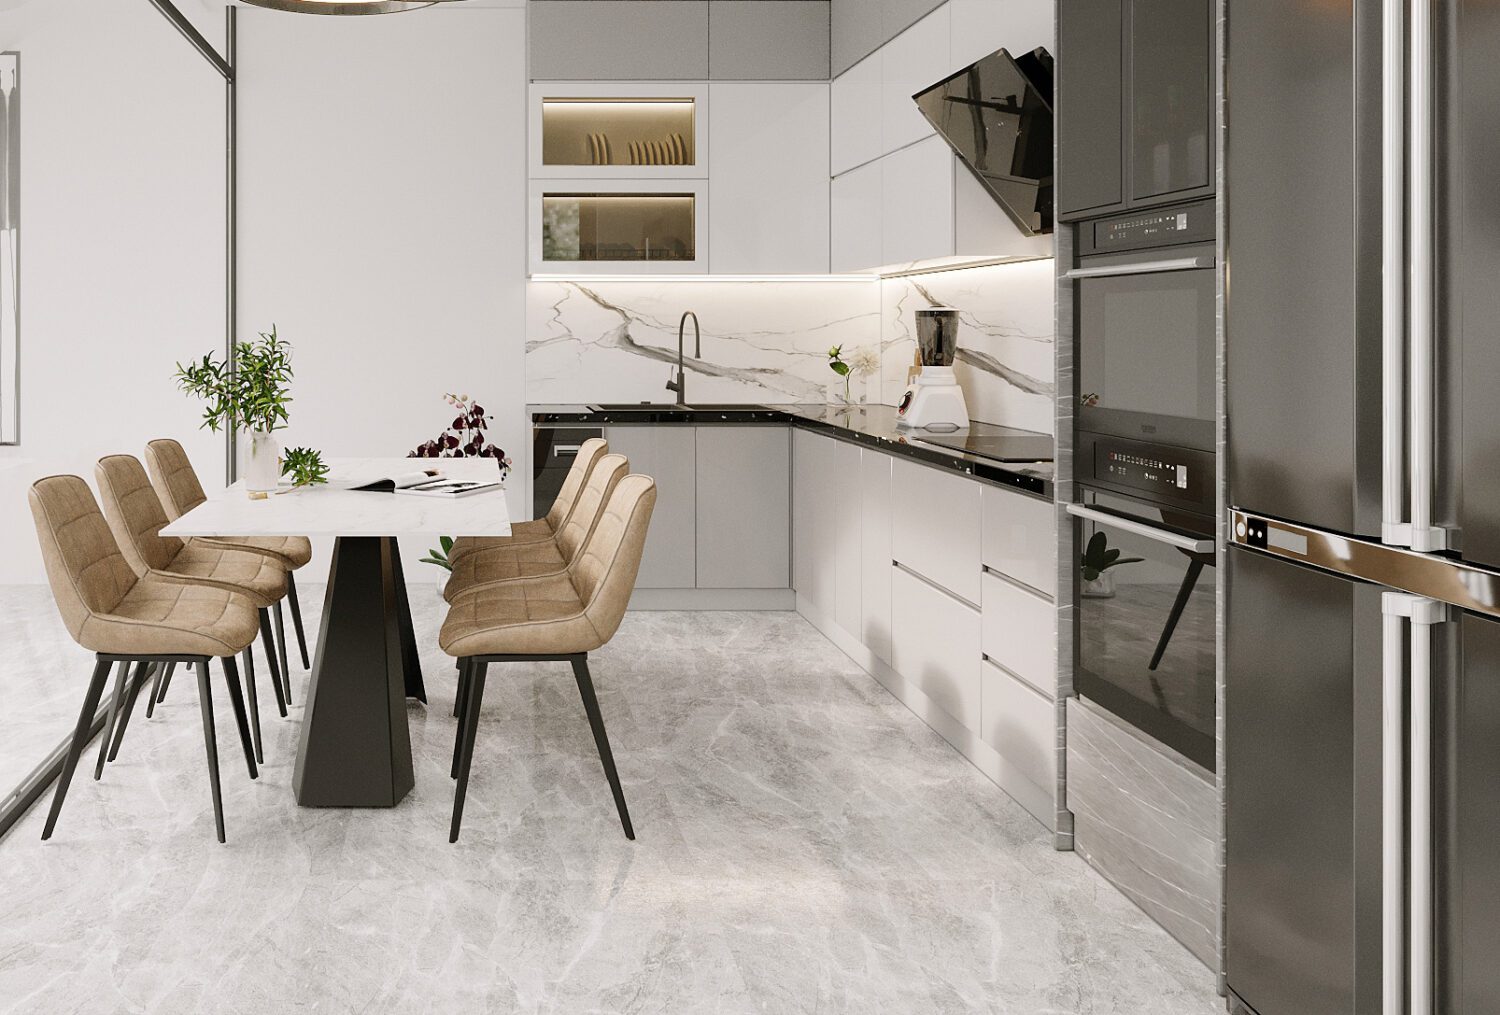 دانلود آشپزخانه سه بعدی 3D Kitchen Room Interior